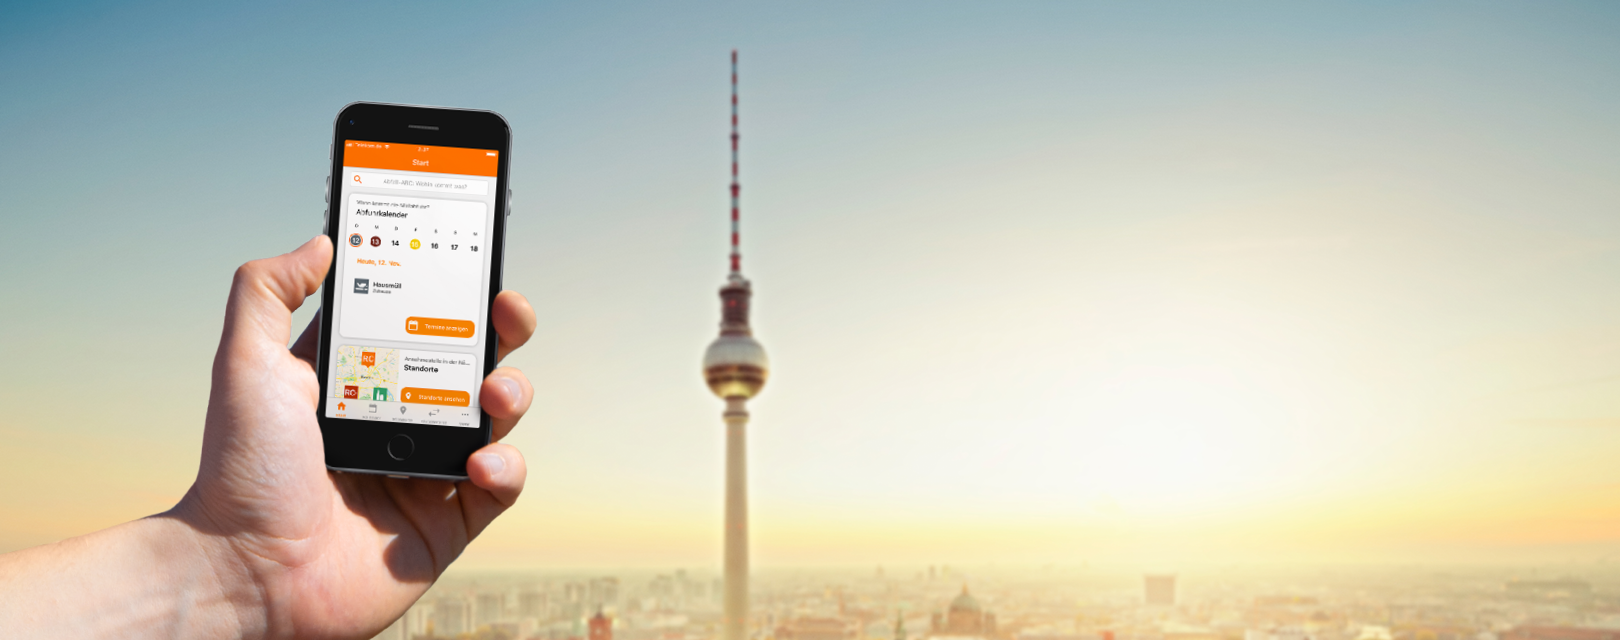 Smartphone mit offener BSR-App, im Hintergrund der Fehrnsehturm mit Alexanderplatz, Berlin